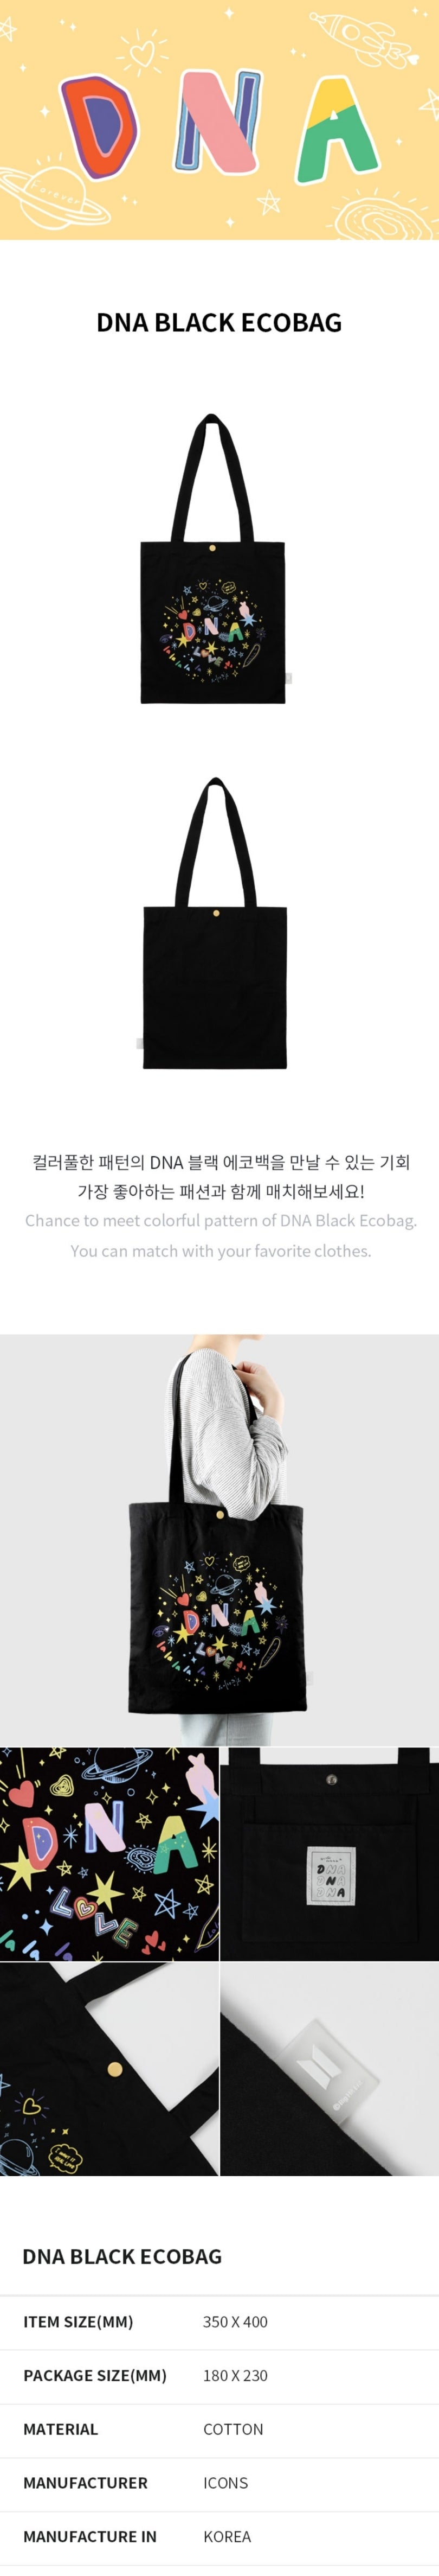 DNA Black Ecobag